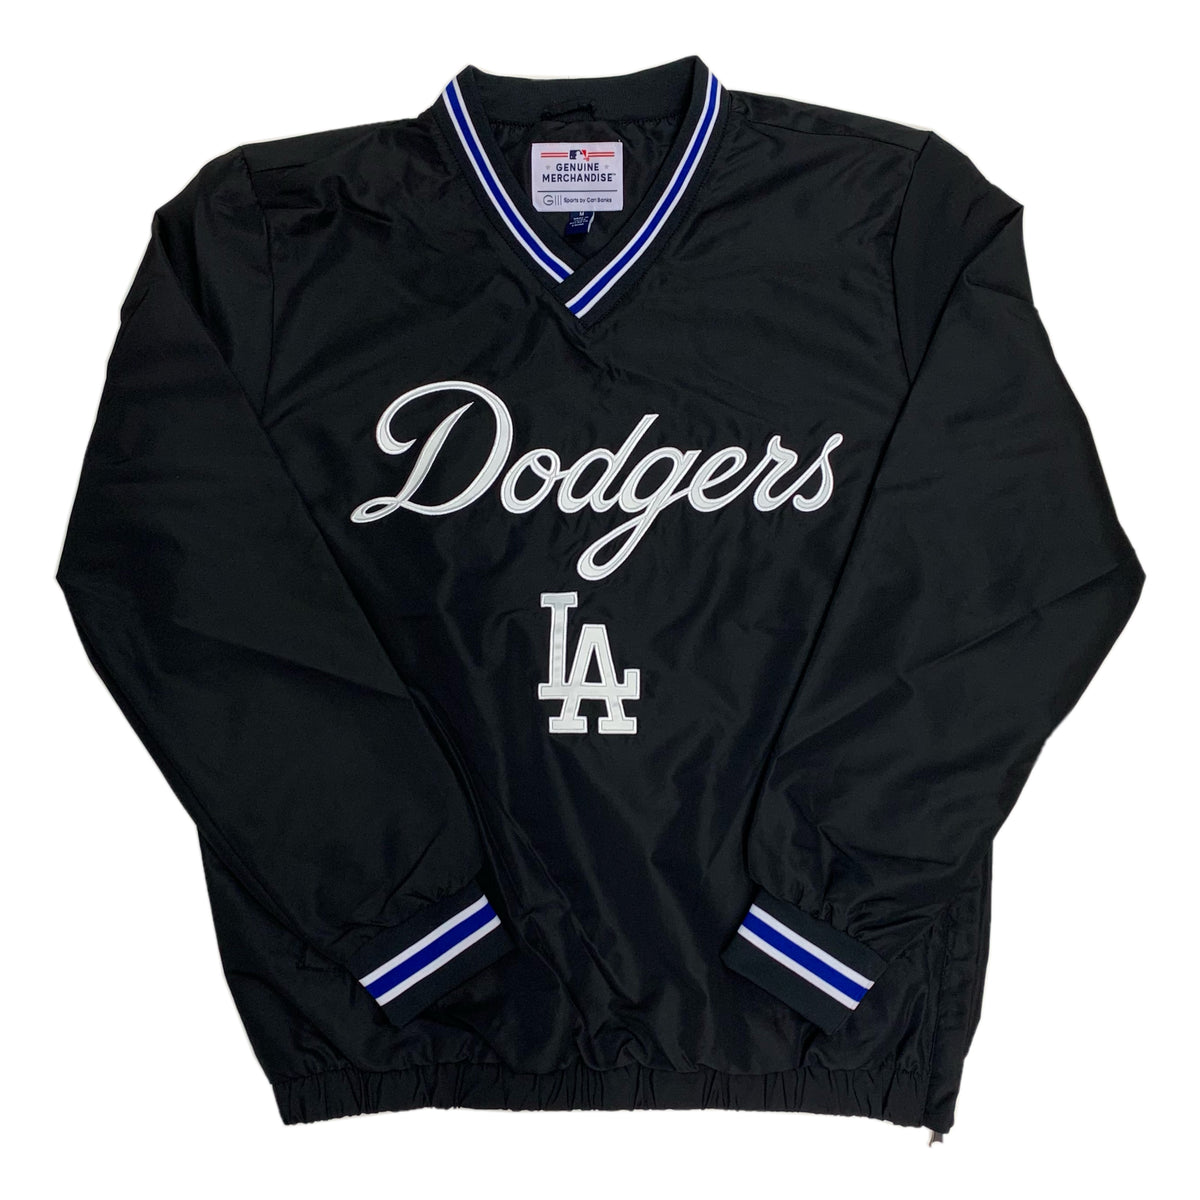 Los Angeles Dodgers Plus Sizes Apparel, Dodgers Plus Sizes Clothing,  Merchandise